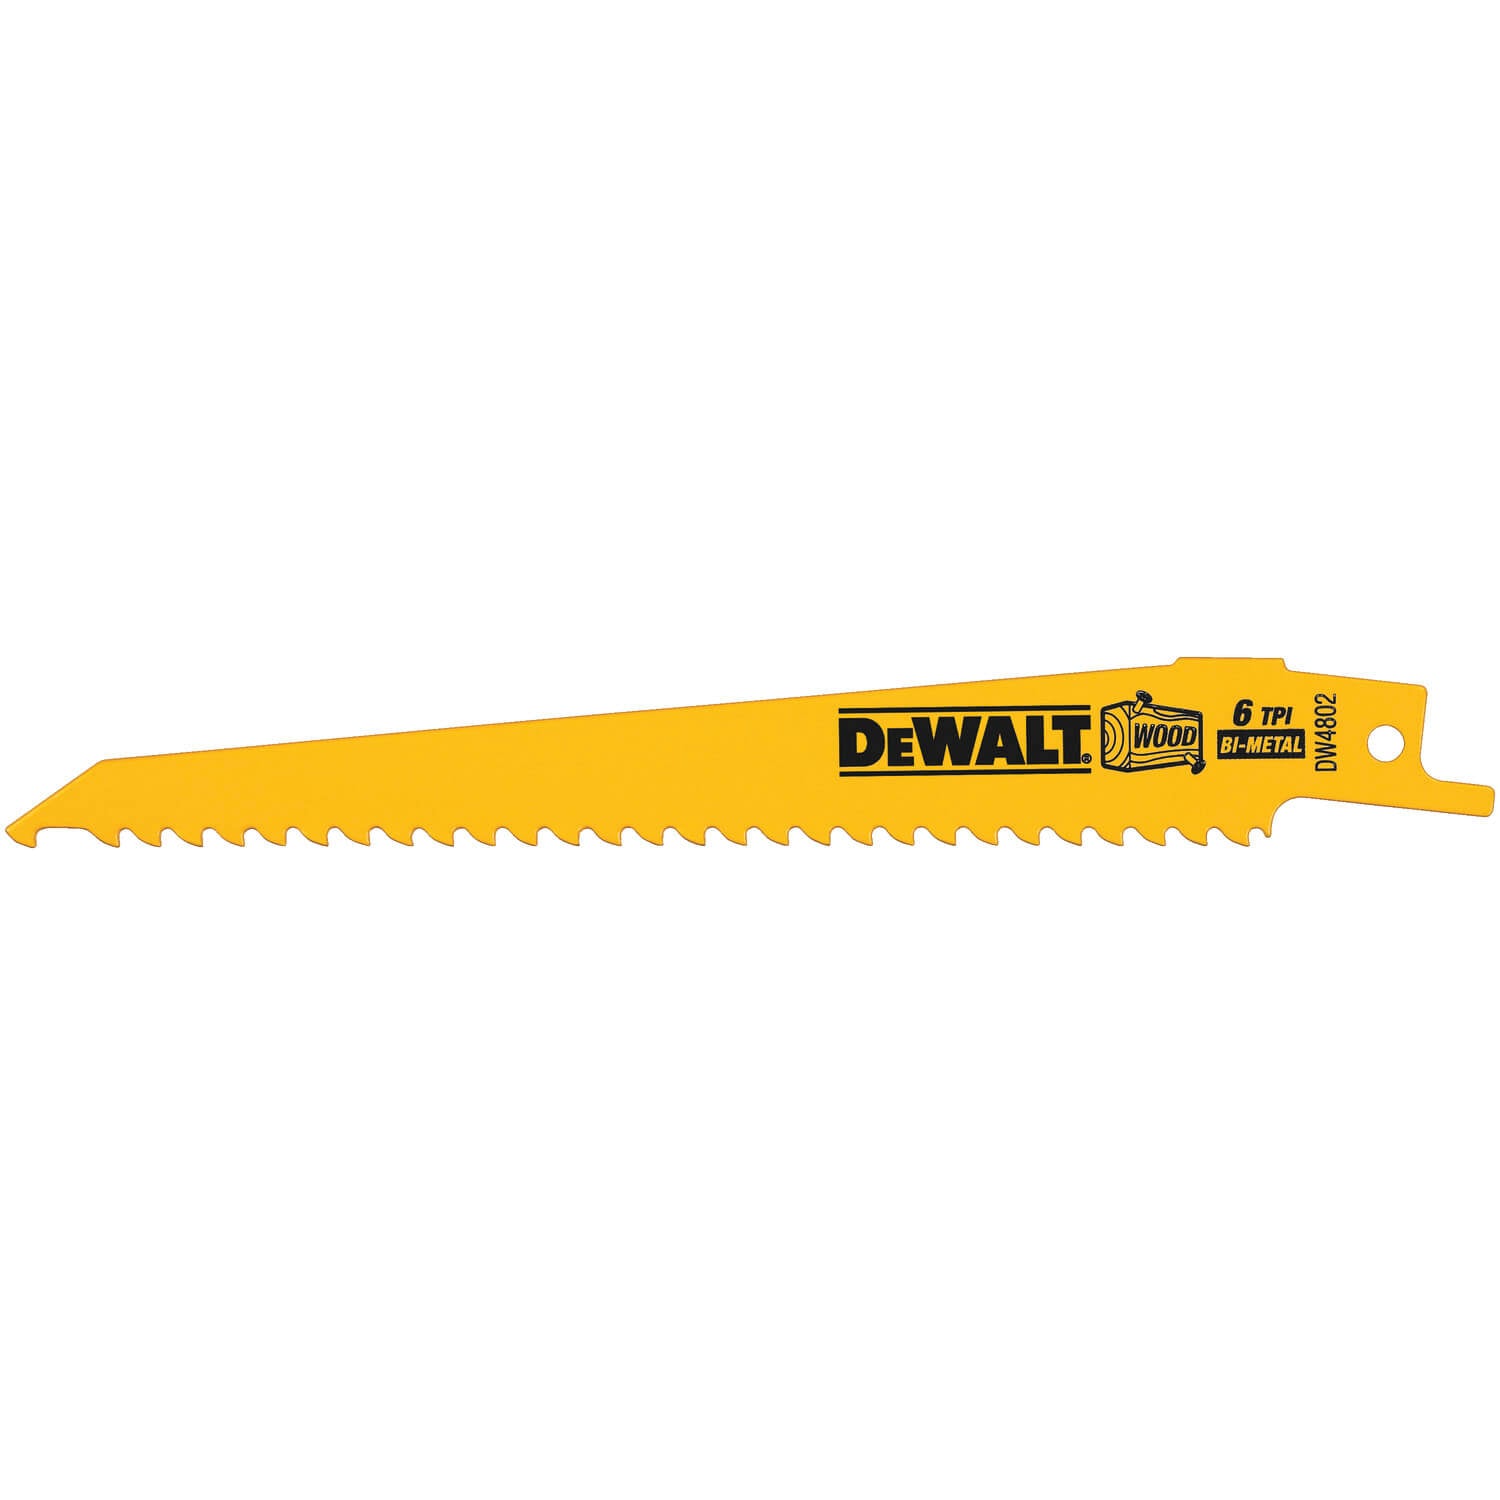 DEWALT DW4802  WOOD CUTTING RECIPROCATING SAW BLADES - wise-line-tools